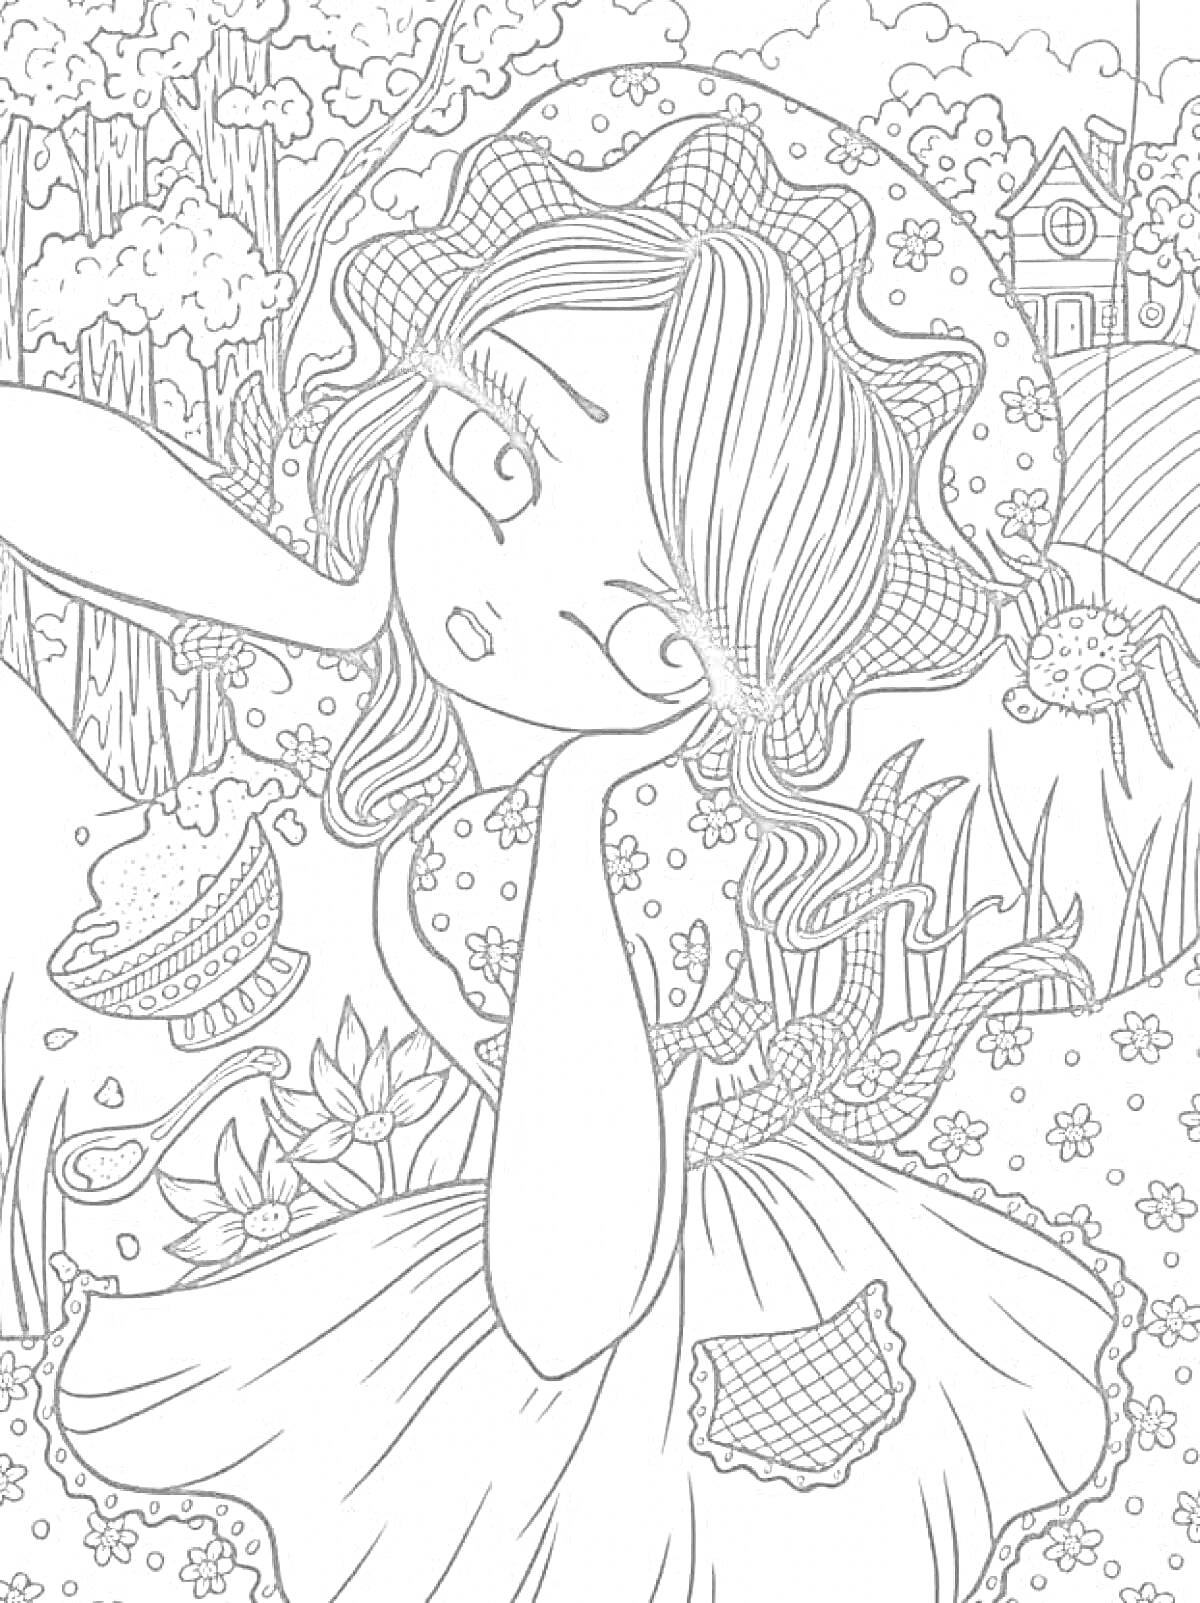 Раскраска Девочка в шляпке на фоне природы с тортом и цветами